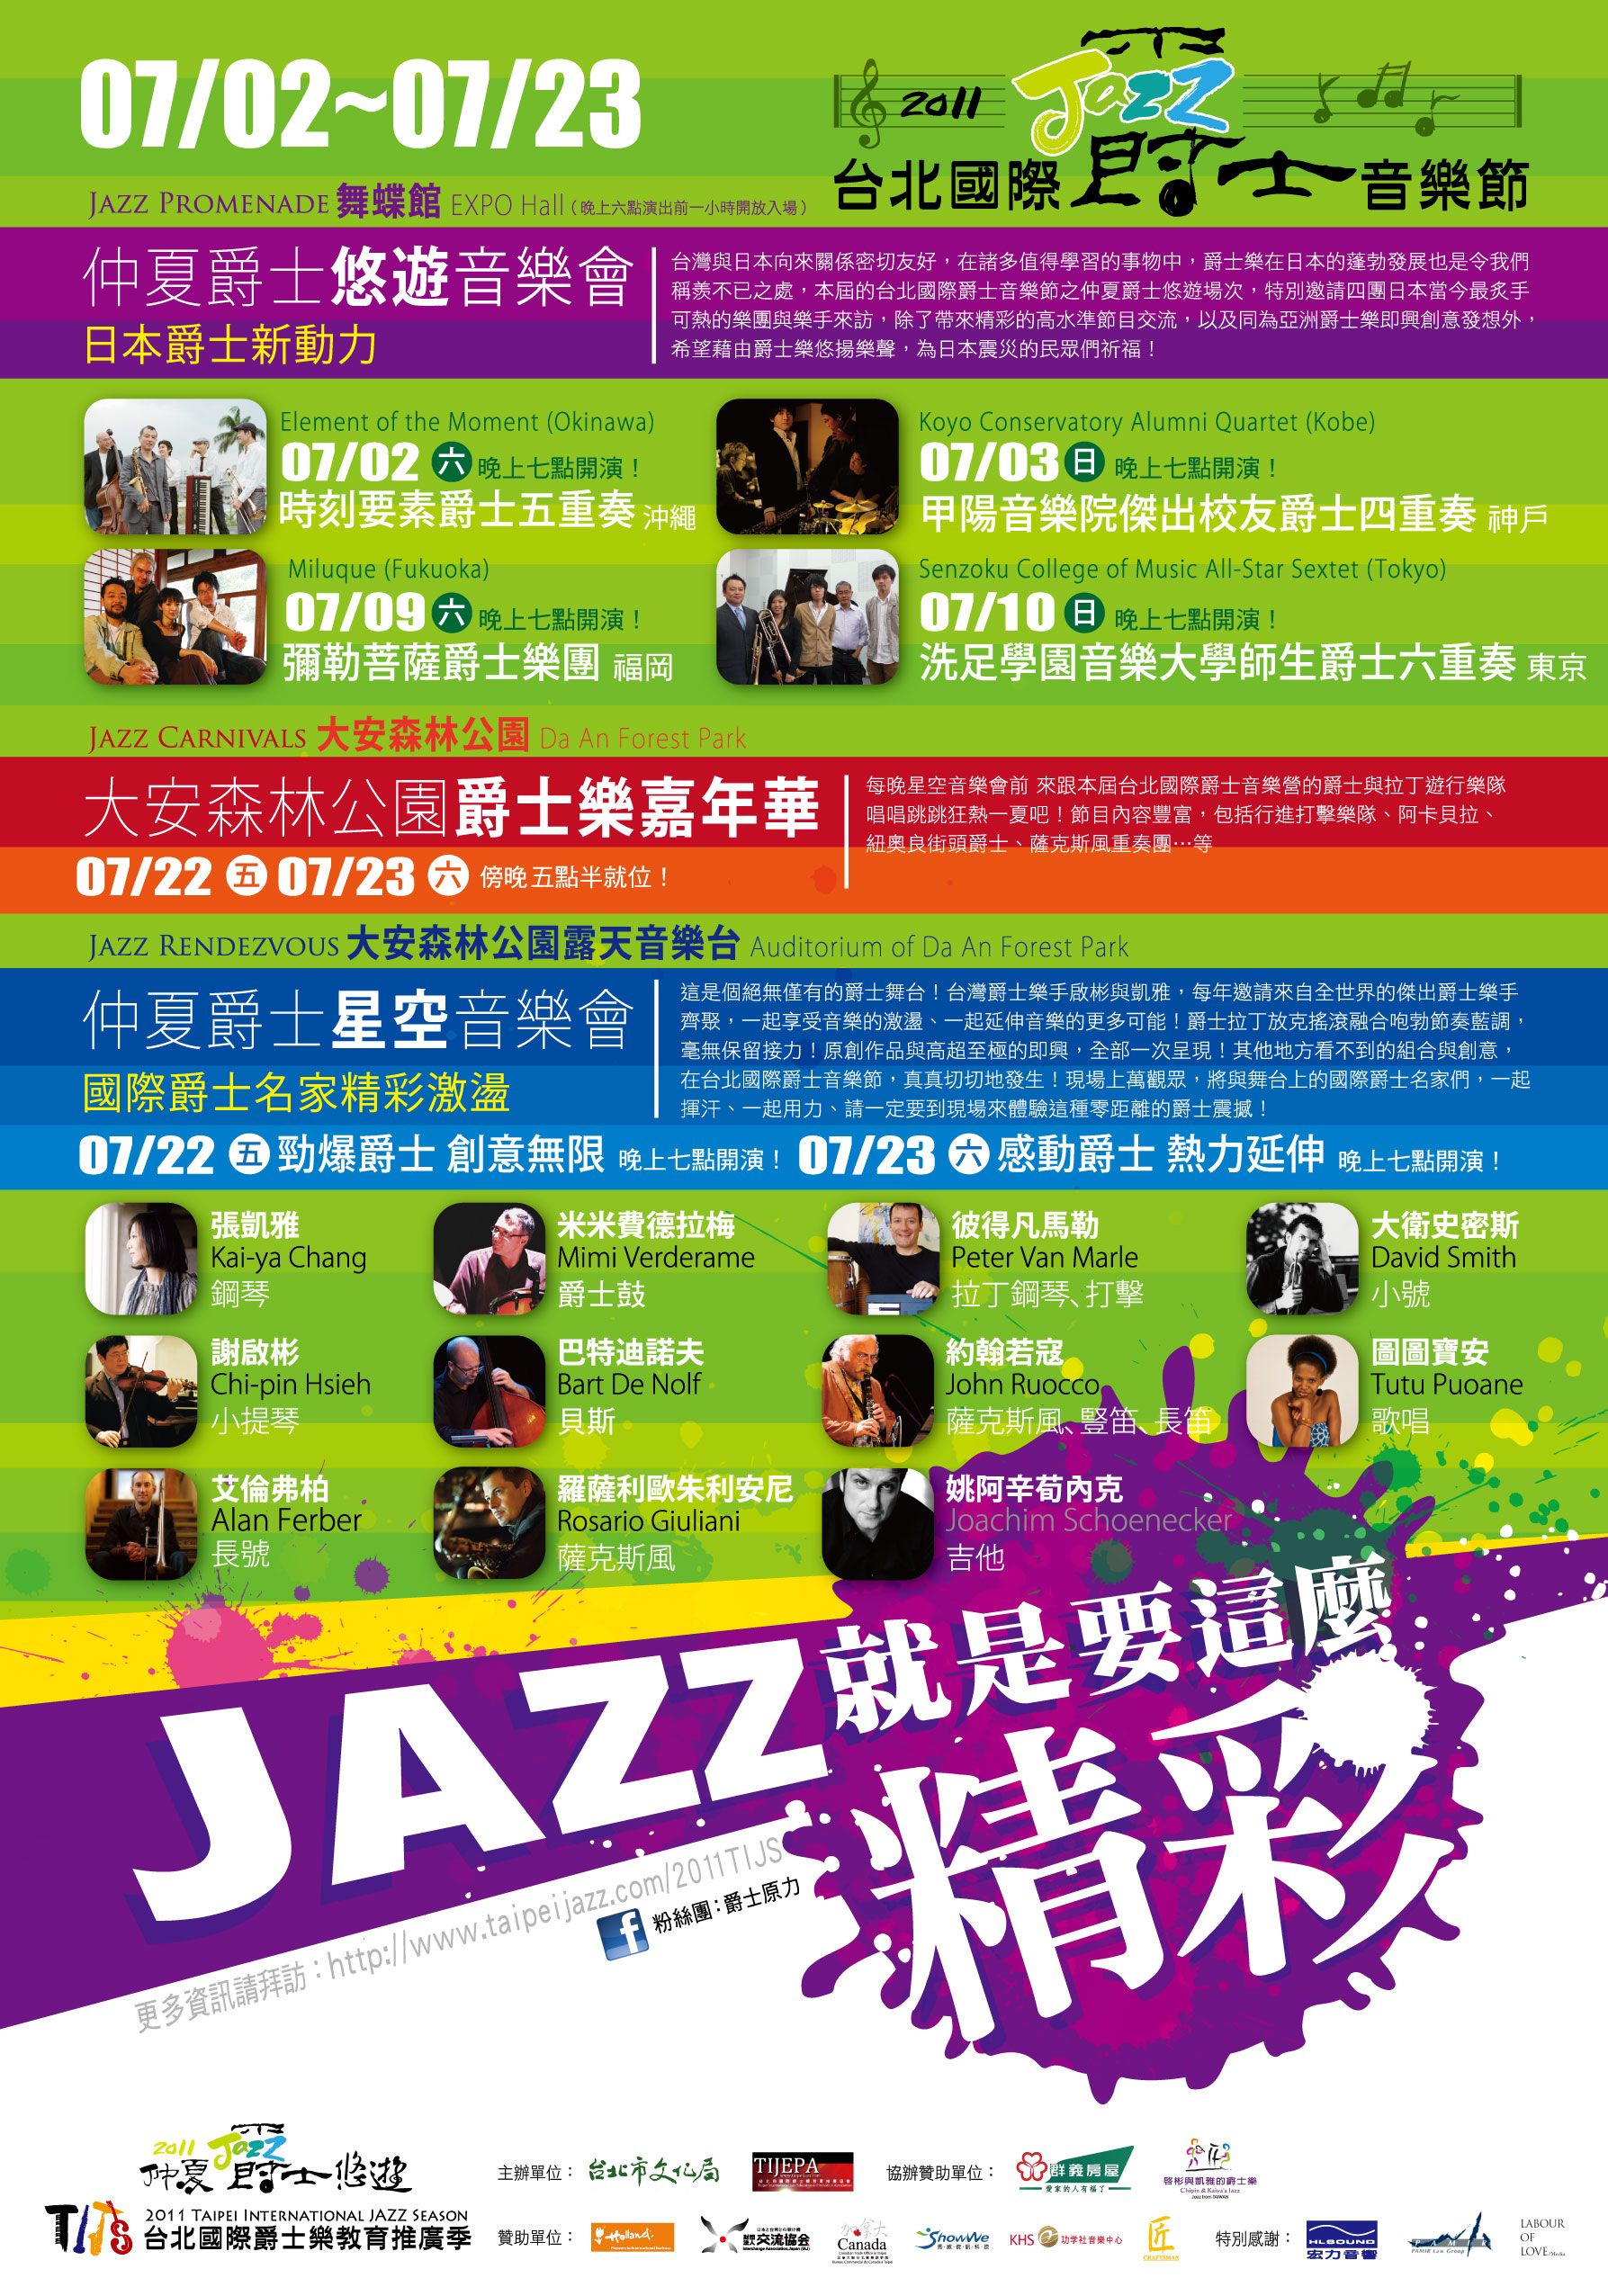 2011台北國際爵士音樂節 悠遊音樂會與星空音樂會精彩接力